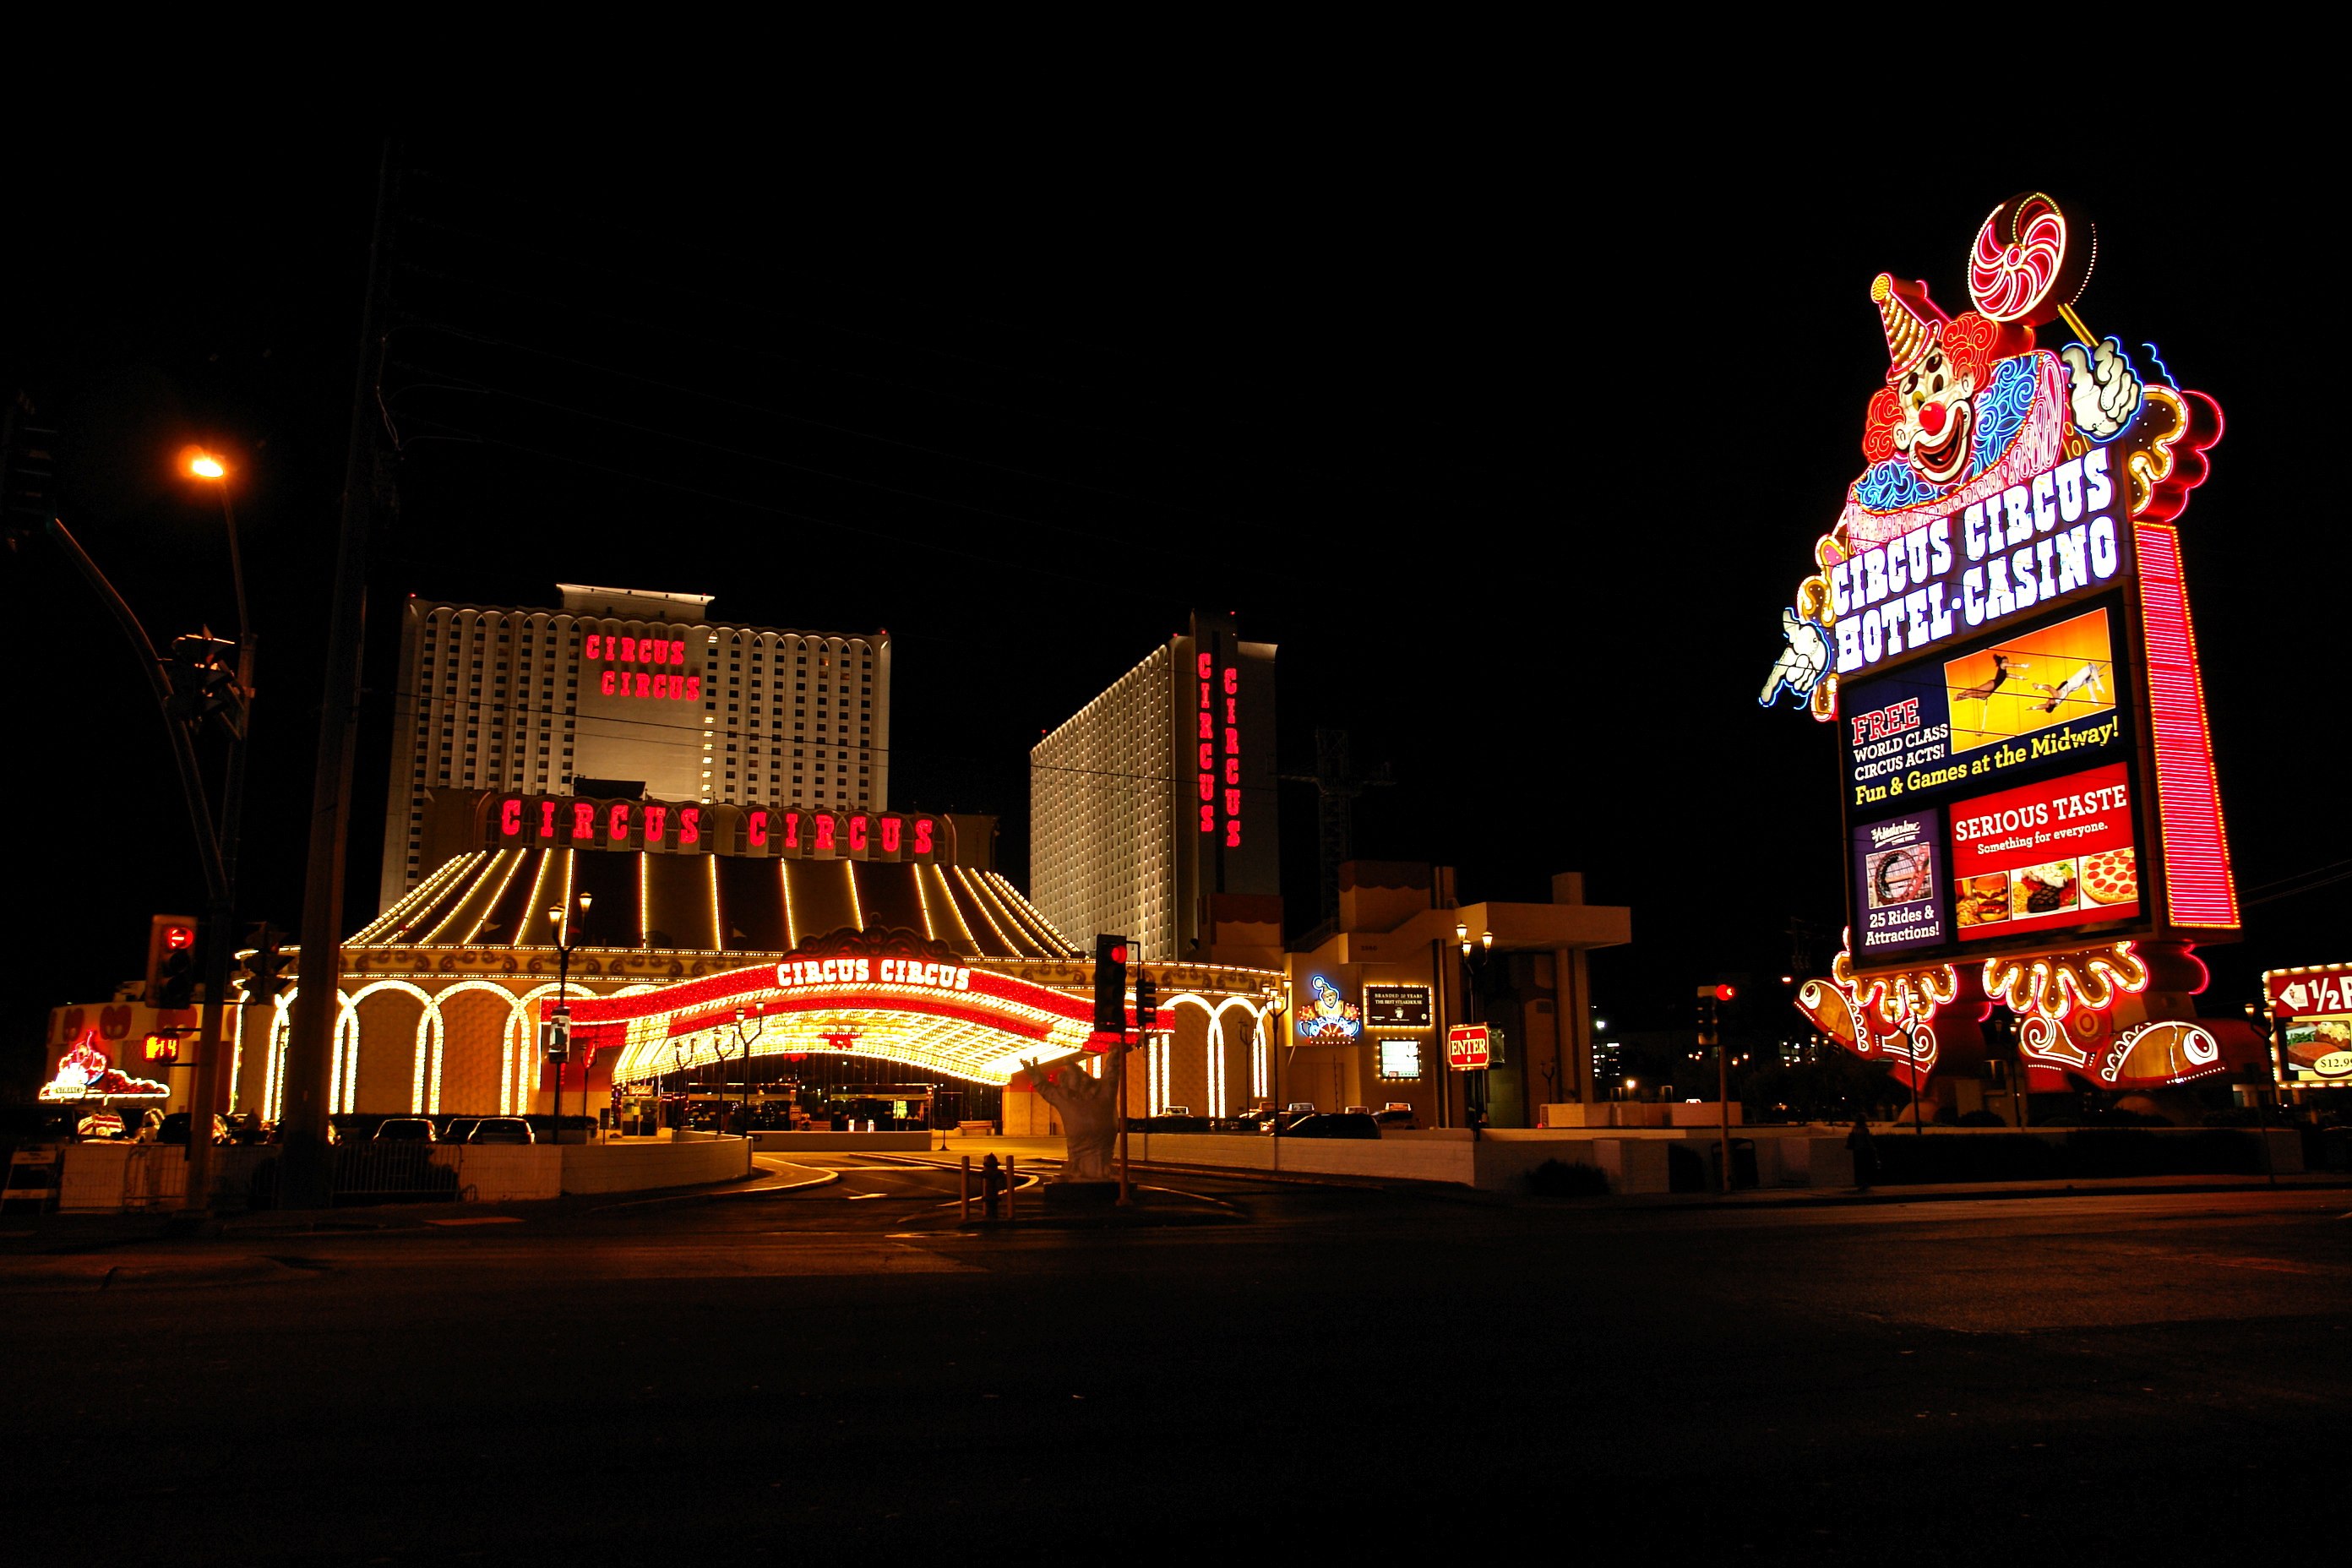 Circus Circus Vegas